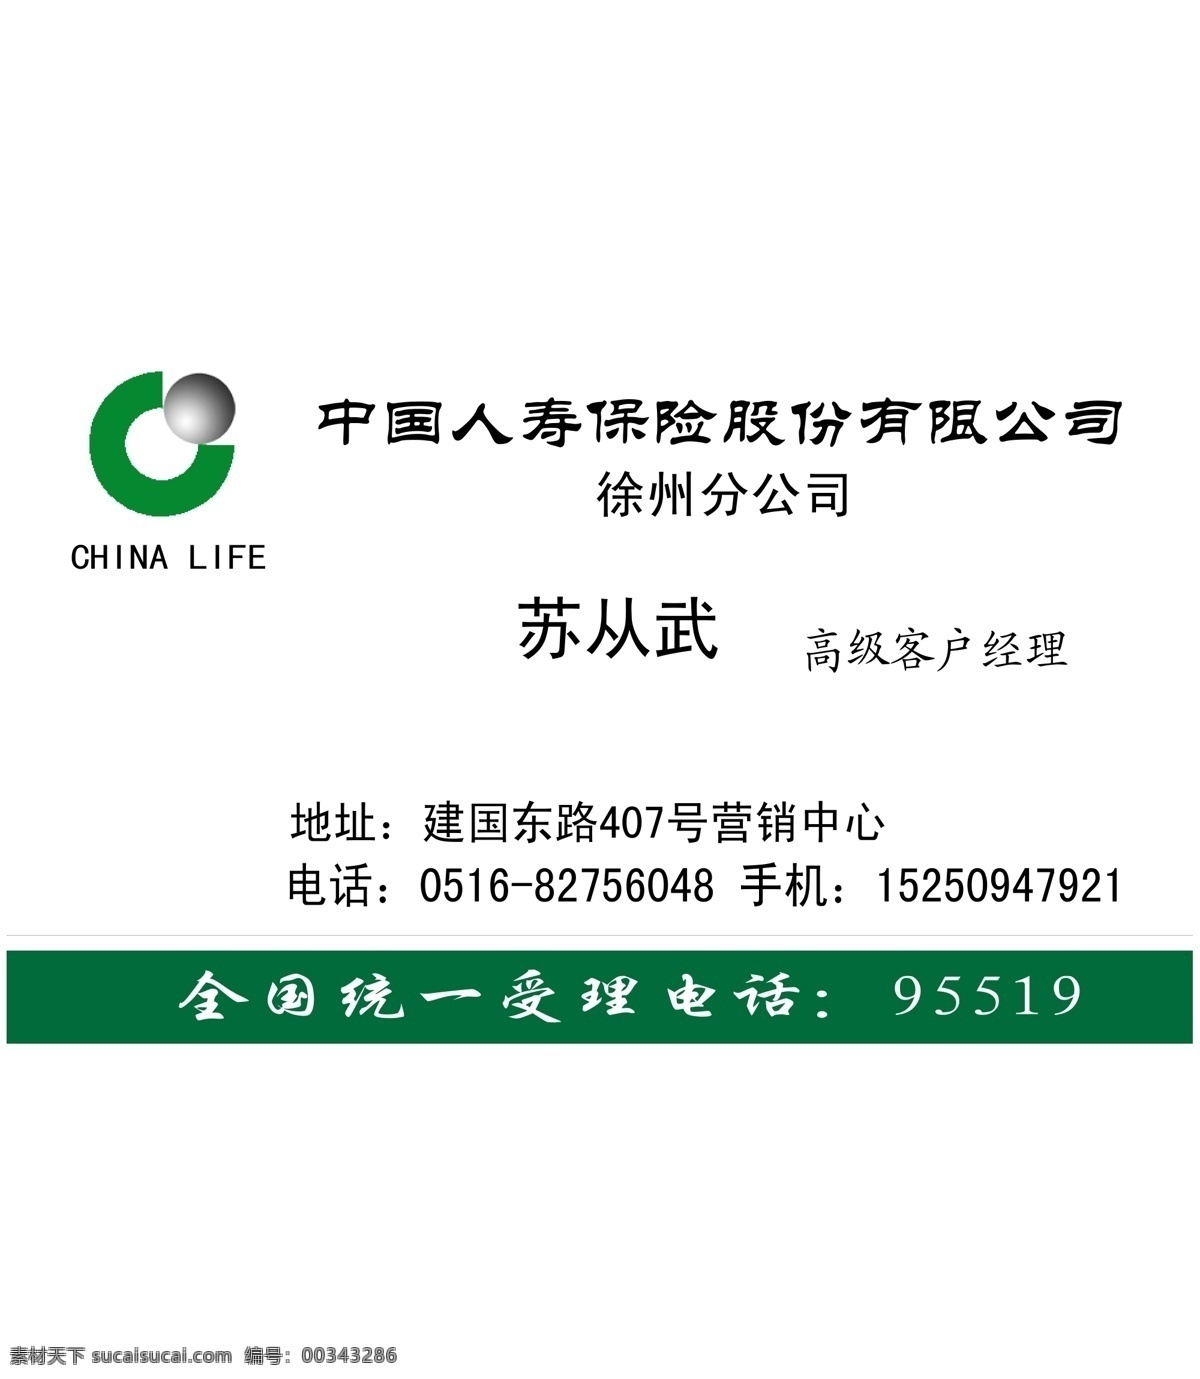 中国 人寿 logo 底 图 合 层 位图 中国人寿 名片 名片卡片 矢量